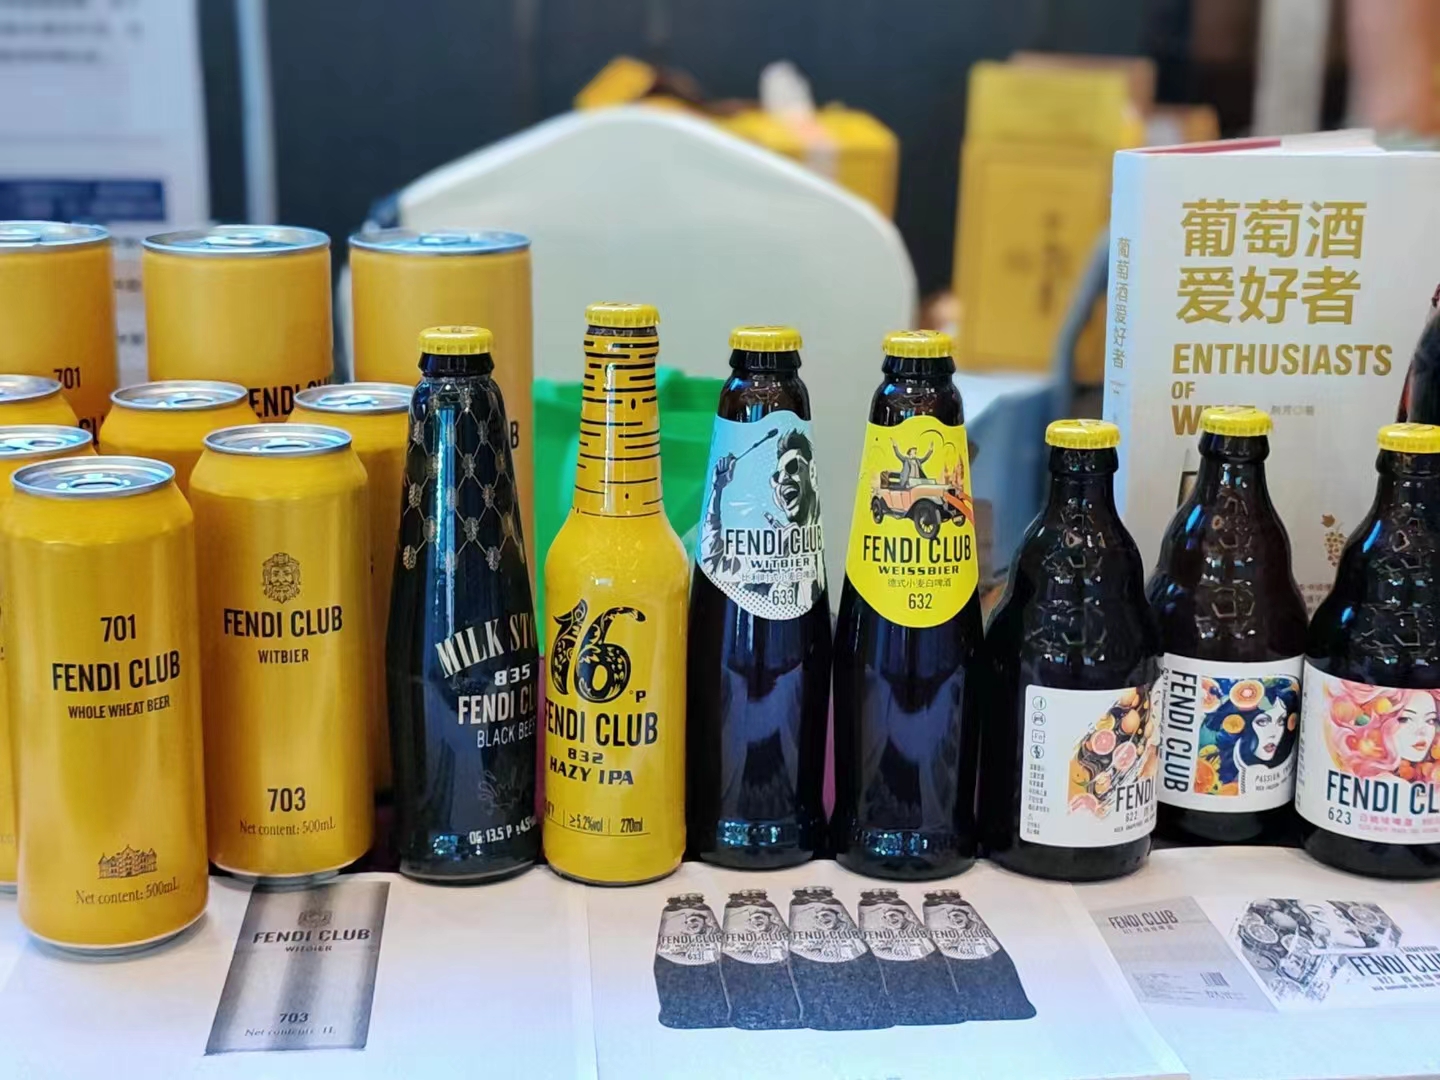 FENDI CLUB分享：罐装或者瓶装对啤酒的风味有什么区别和影响？